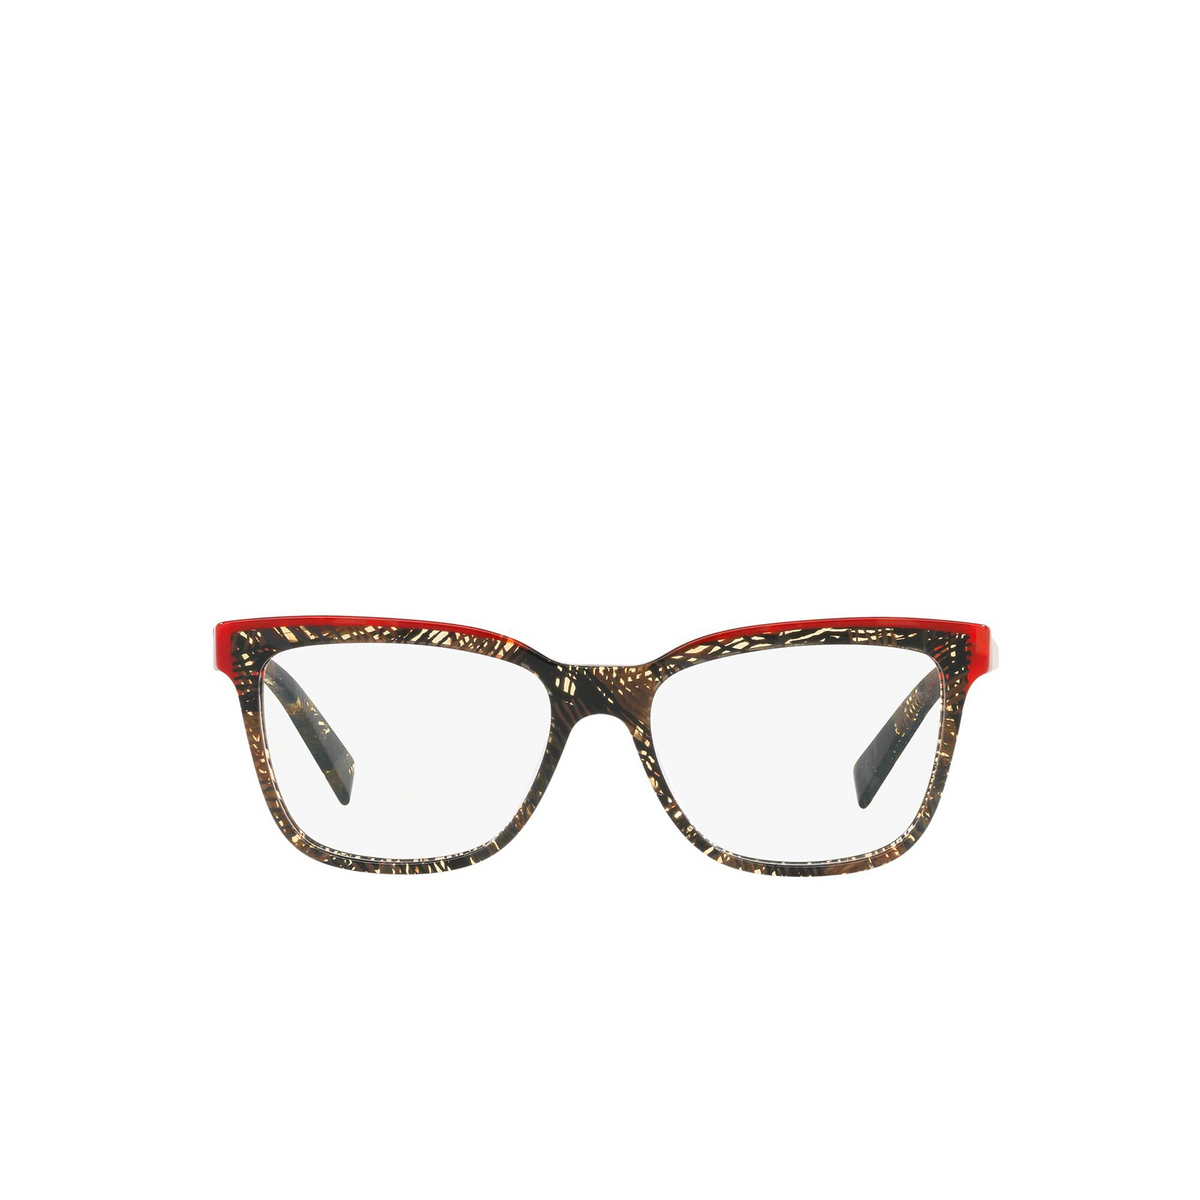 Alain Mikli® Square Eyeglasses: A03077 color Rouge Mikli / Palmier Chocolat 006 - front view.